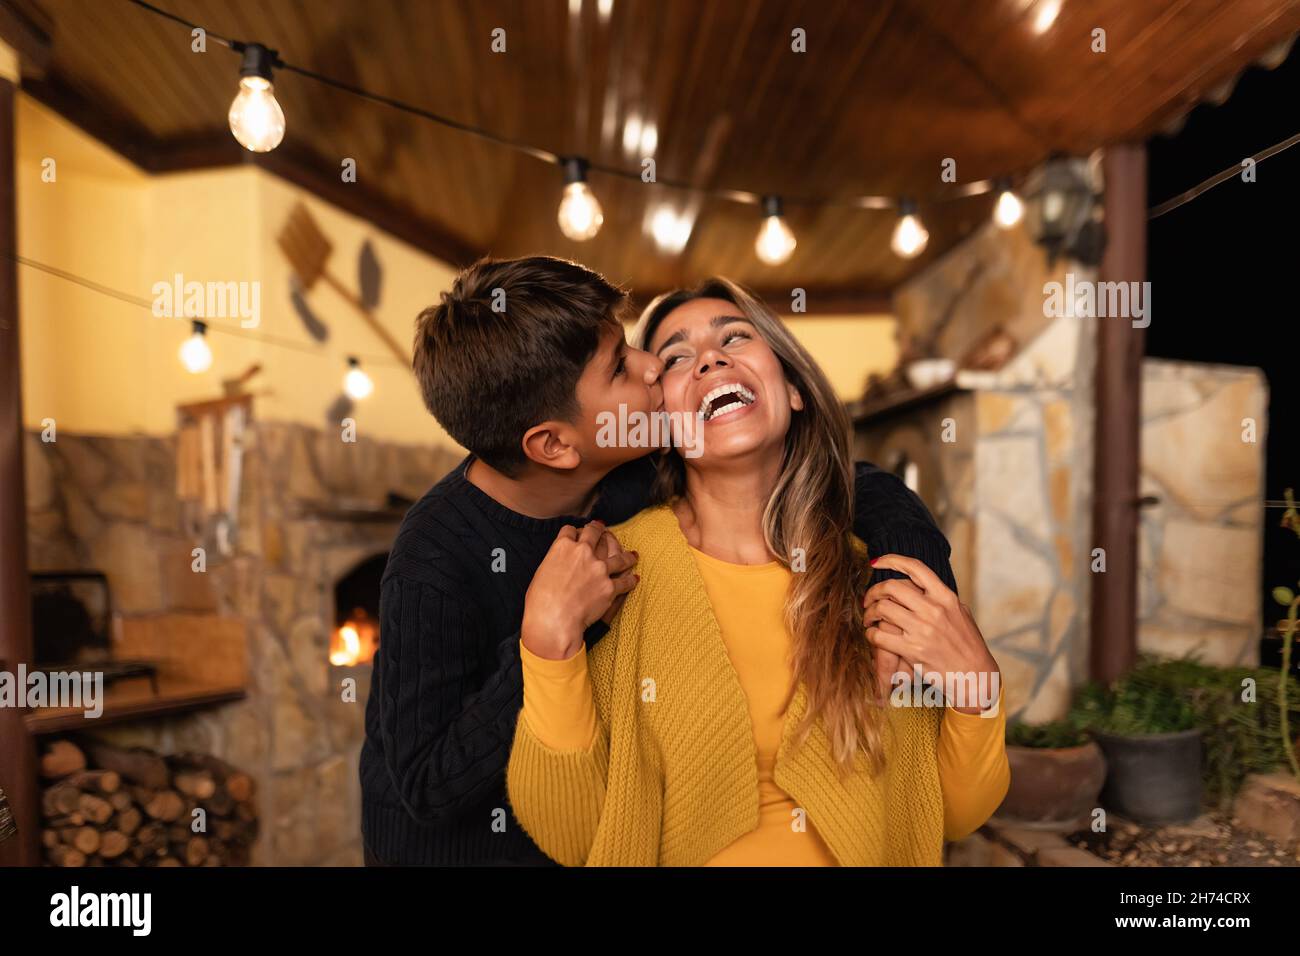 Glücklich lächelnde hispanische Mutter mit zarten Moment mit Sohn - Familie Liebe und Einheit Konzept Stockfoto